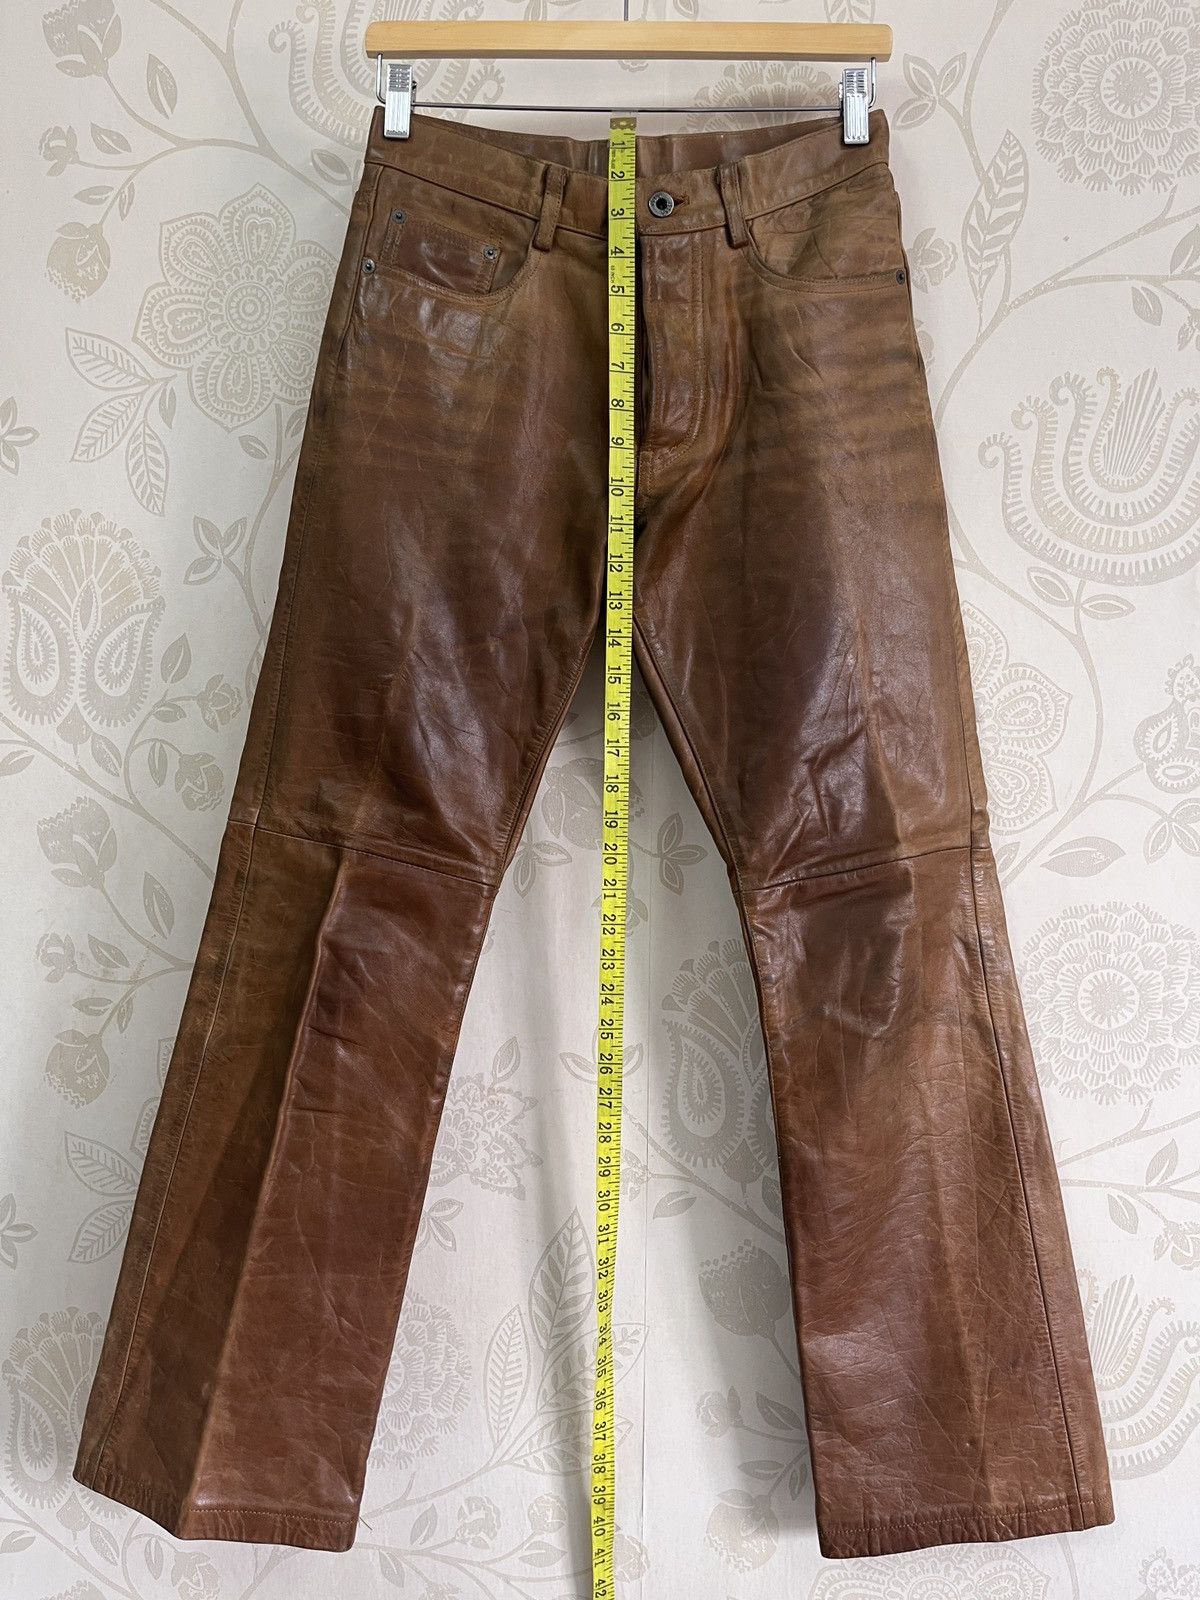 Genuine Leather - Japan 5351 Pour Les Homme Leather Pants - 2